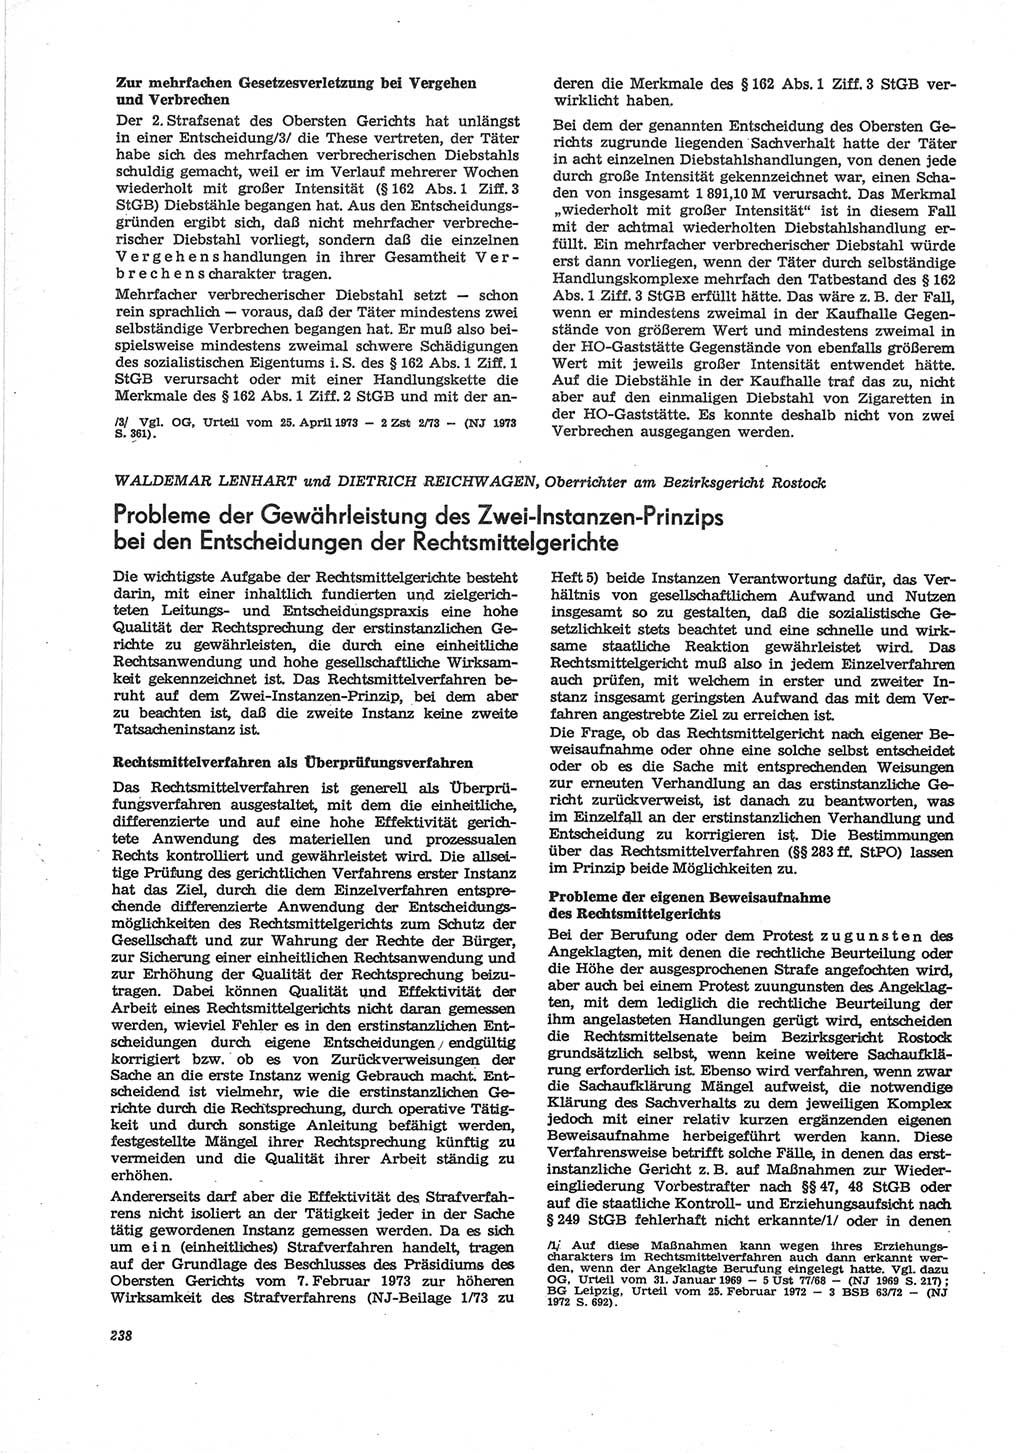 Neue Justiz (NJ), Zeitschrift für Recht und Rechtswissenschaft [Deutsche Demokratische Republik (DDR)], 28. Jahrgang 1974, Seite 238 (NJ DDR 1974, S. 238)